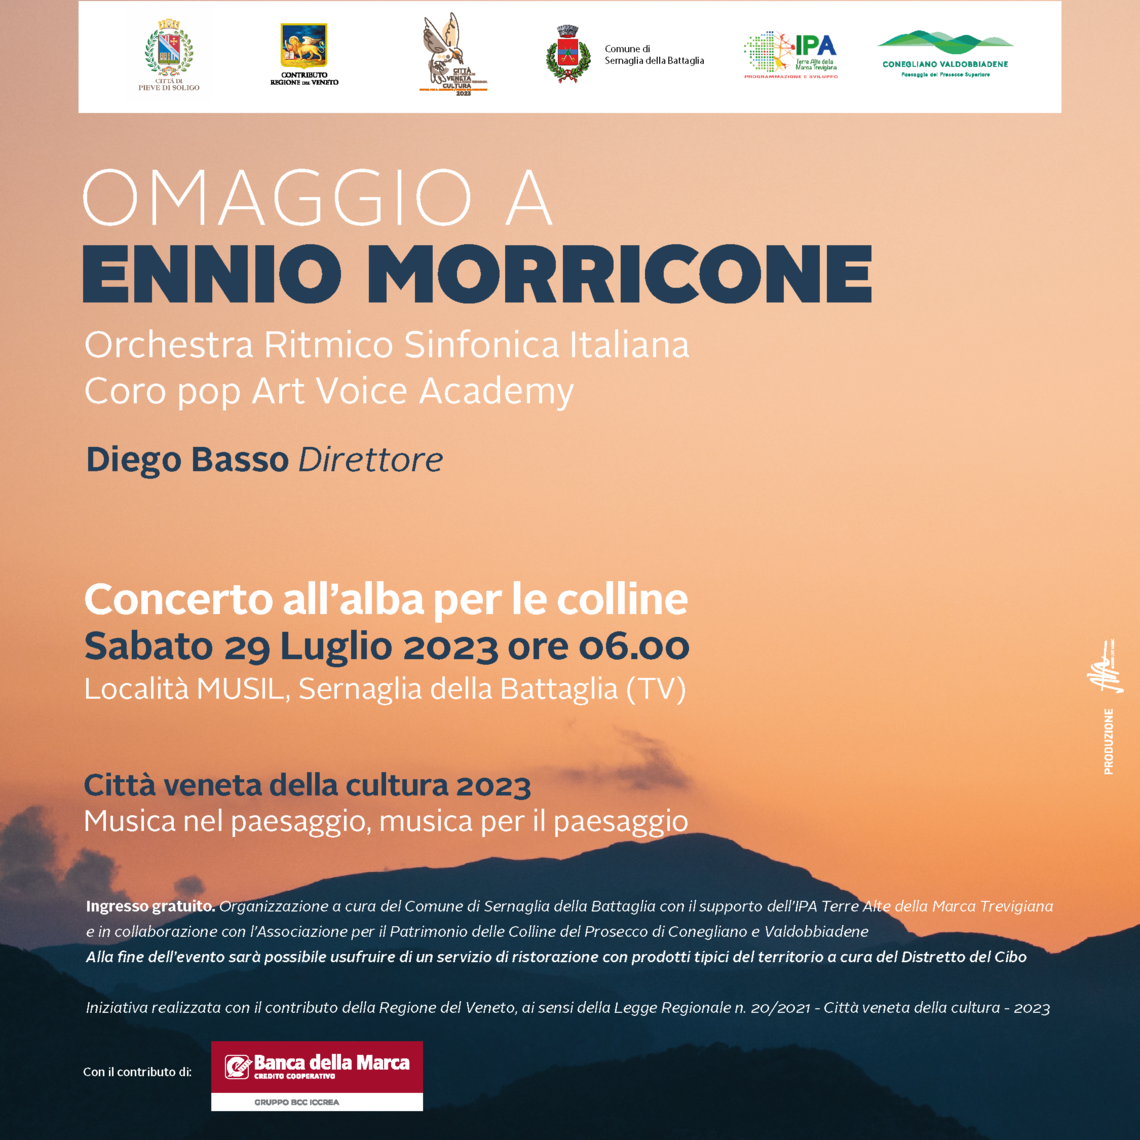 Il primo concerto all'alba sulle colline del prosecco Unesco rende "Omaggio a Ennio Morricone" 